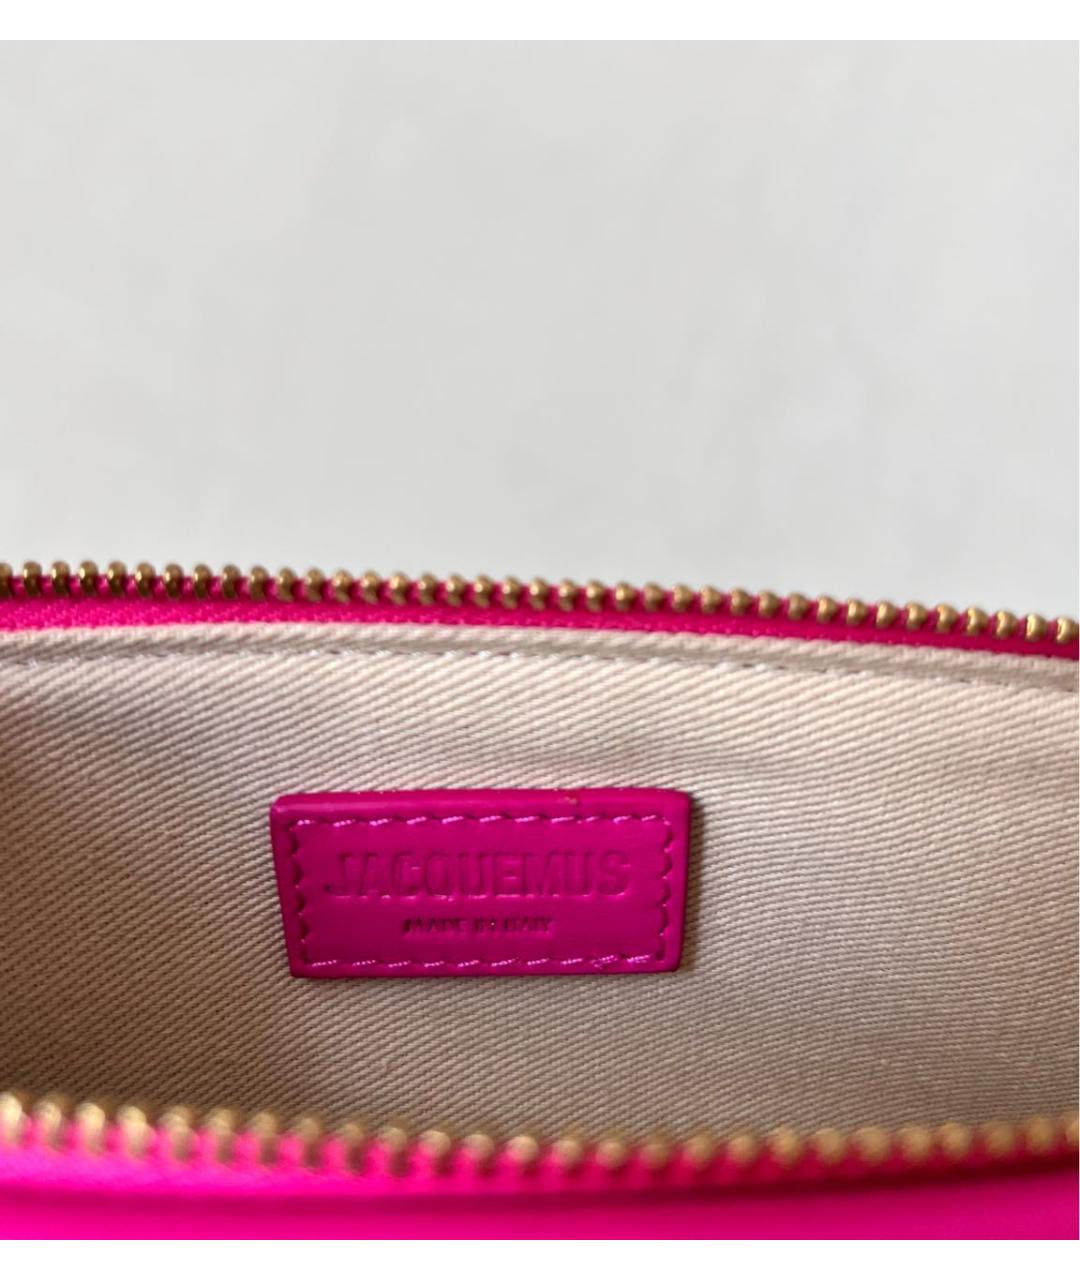 JACQUEMUS Розовая кожаная сумка через плечо, фото 6